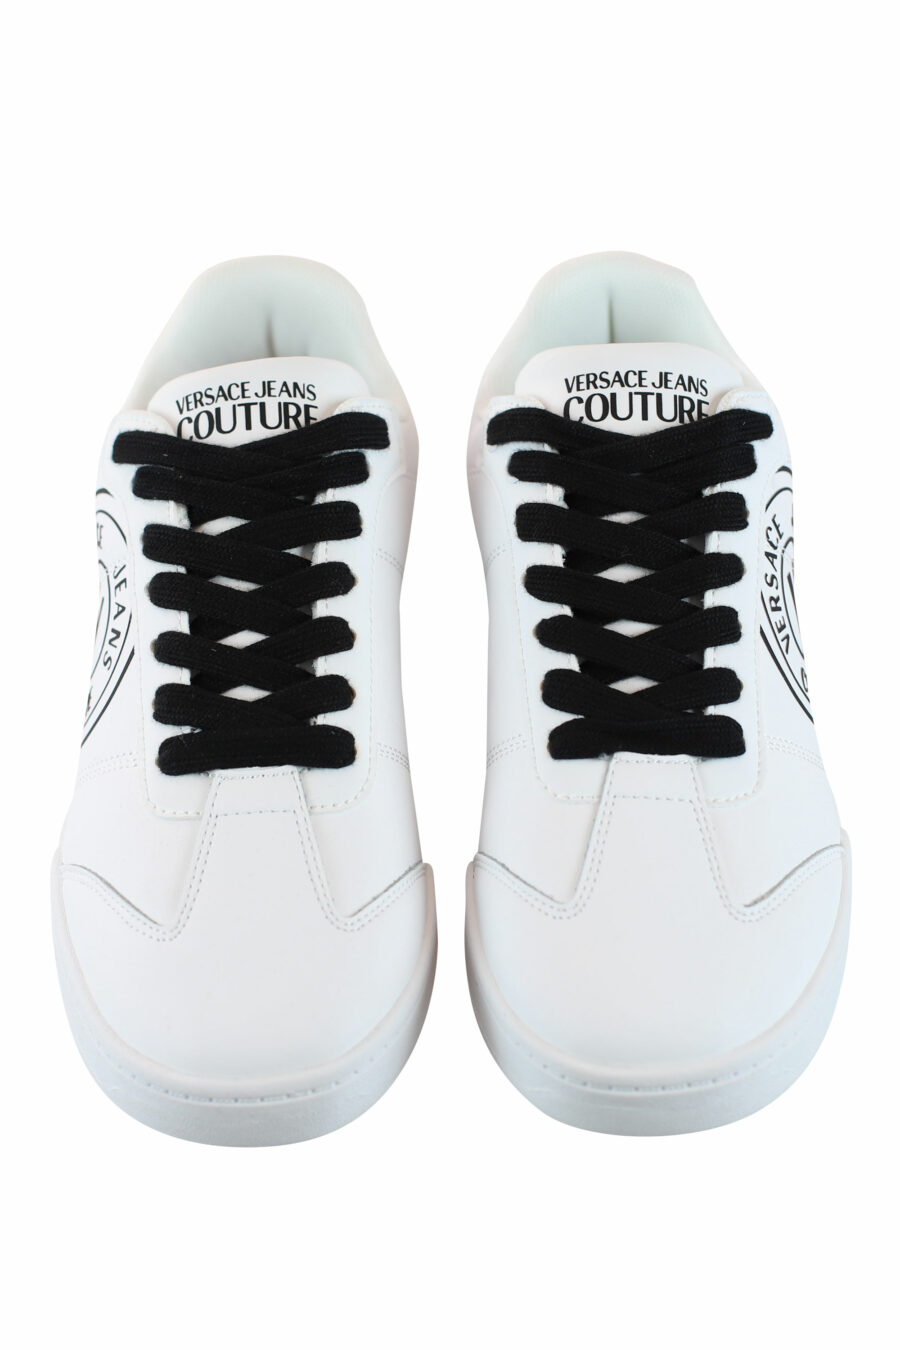 Zapatillas blancas con logo circular y cordones negros - IMG 4306